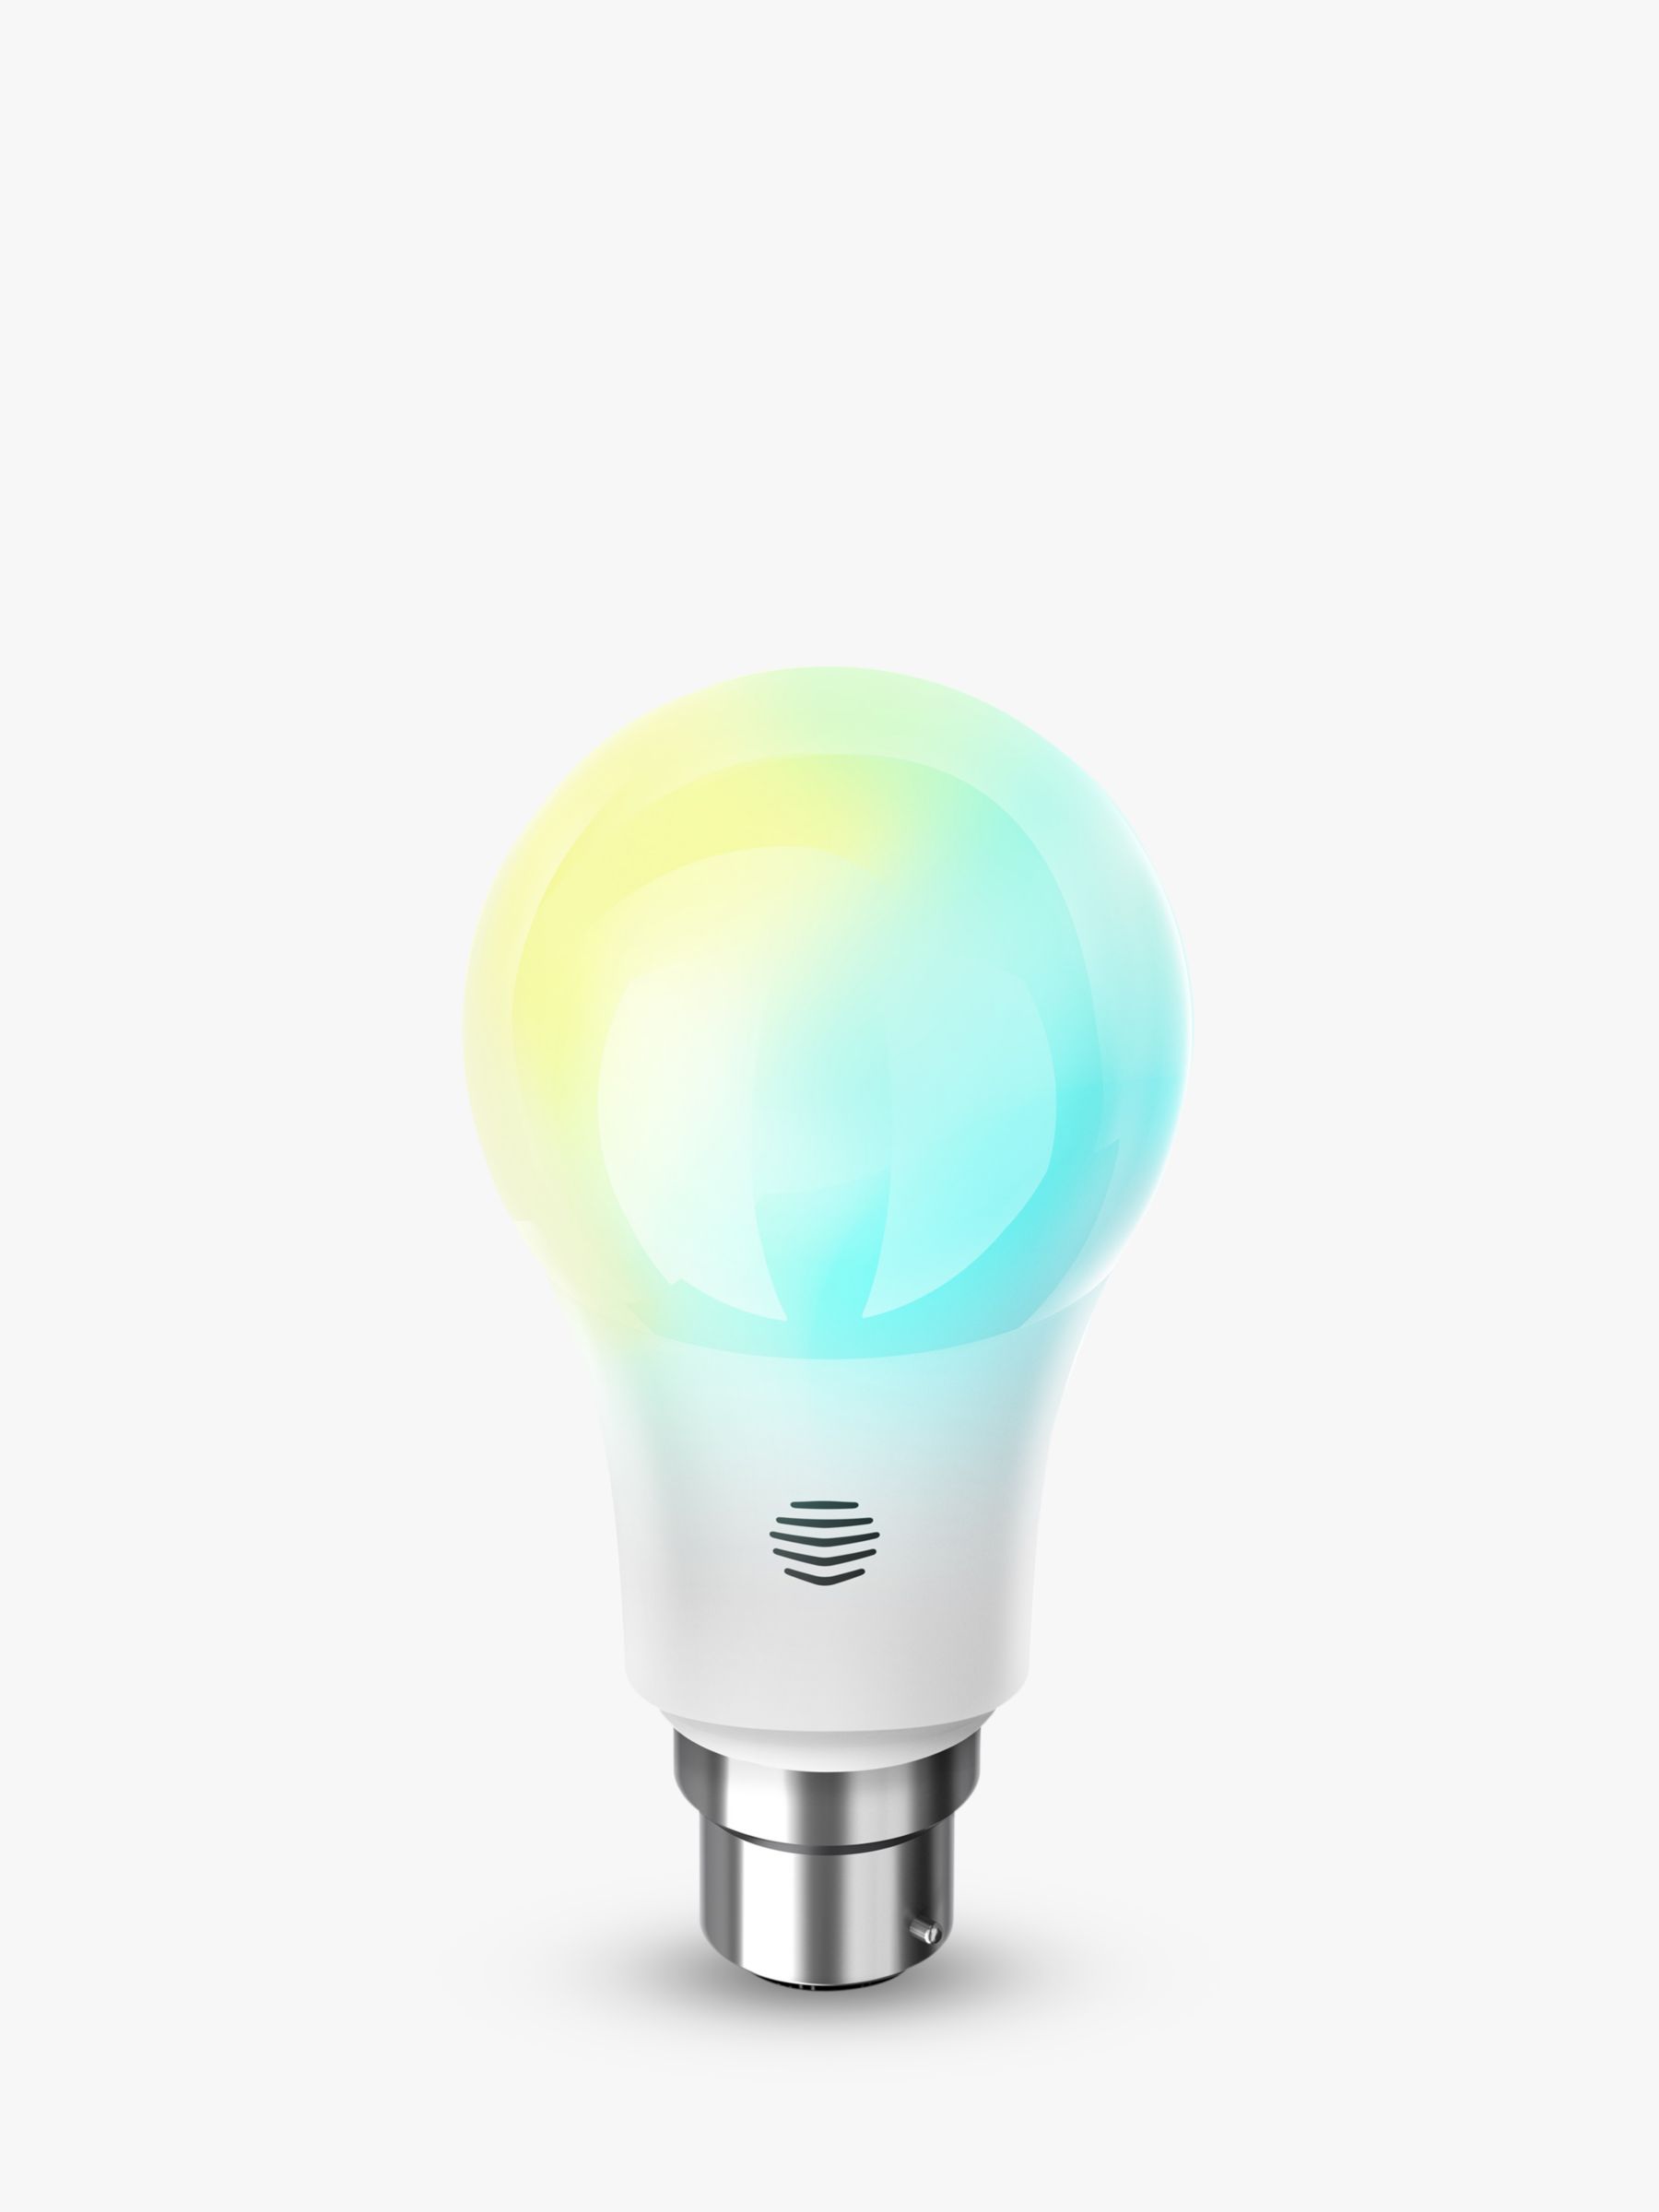 wireless smart light bulbs